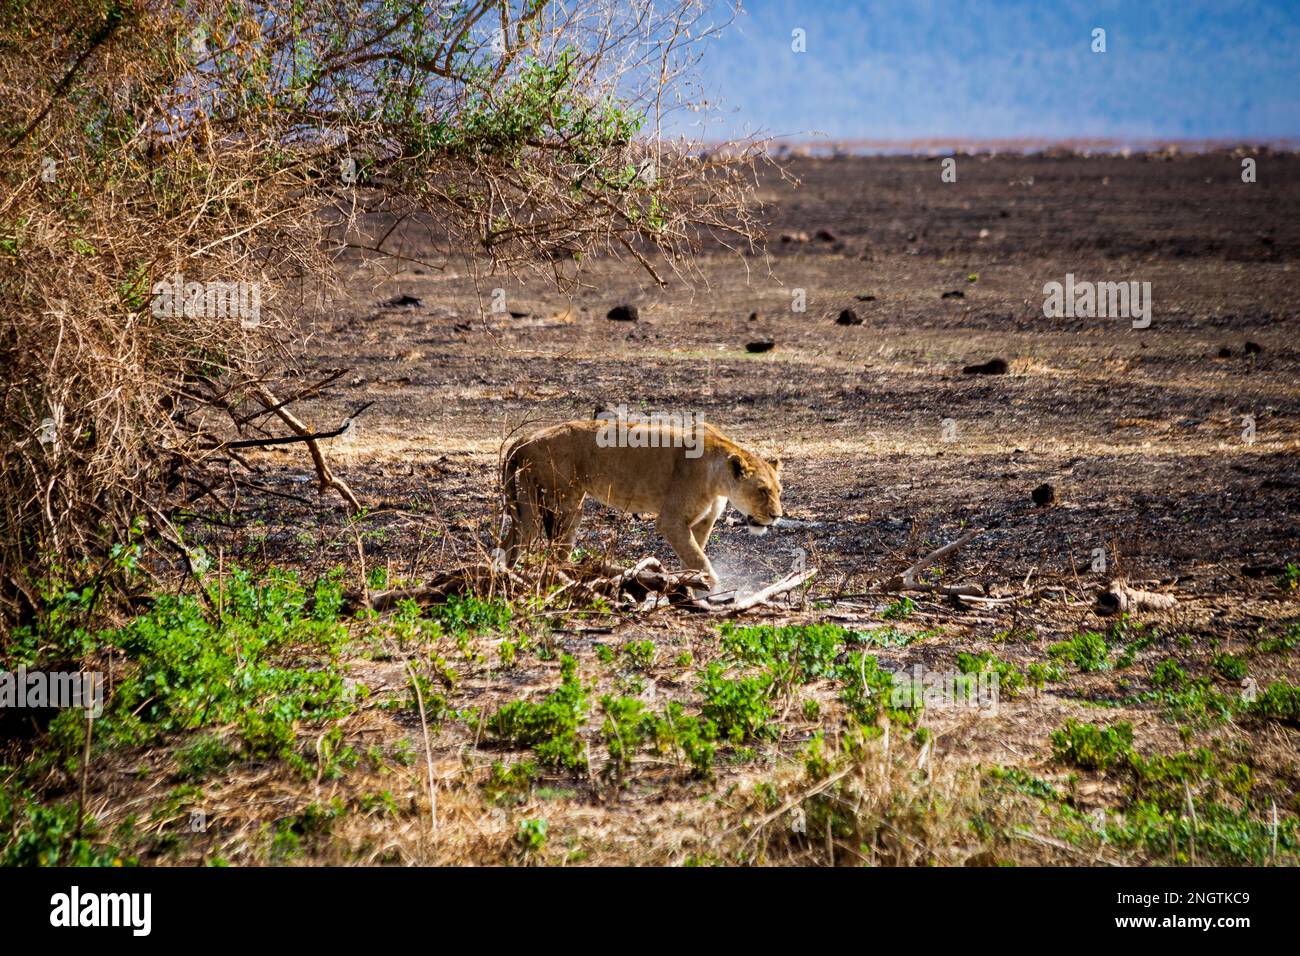 löwen gehen Wildtiere, afrika, tansania Stockfoto